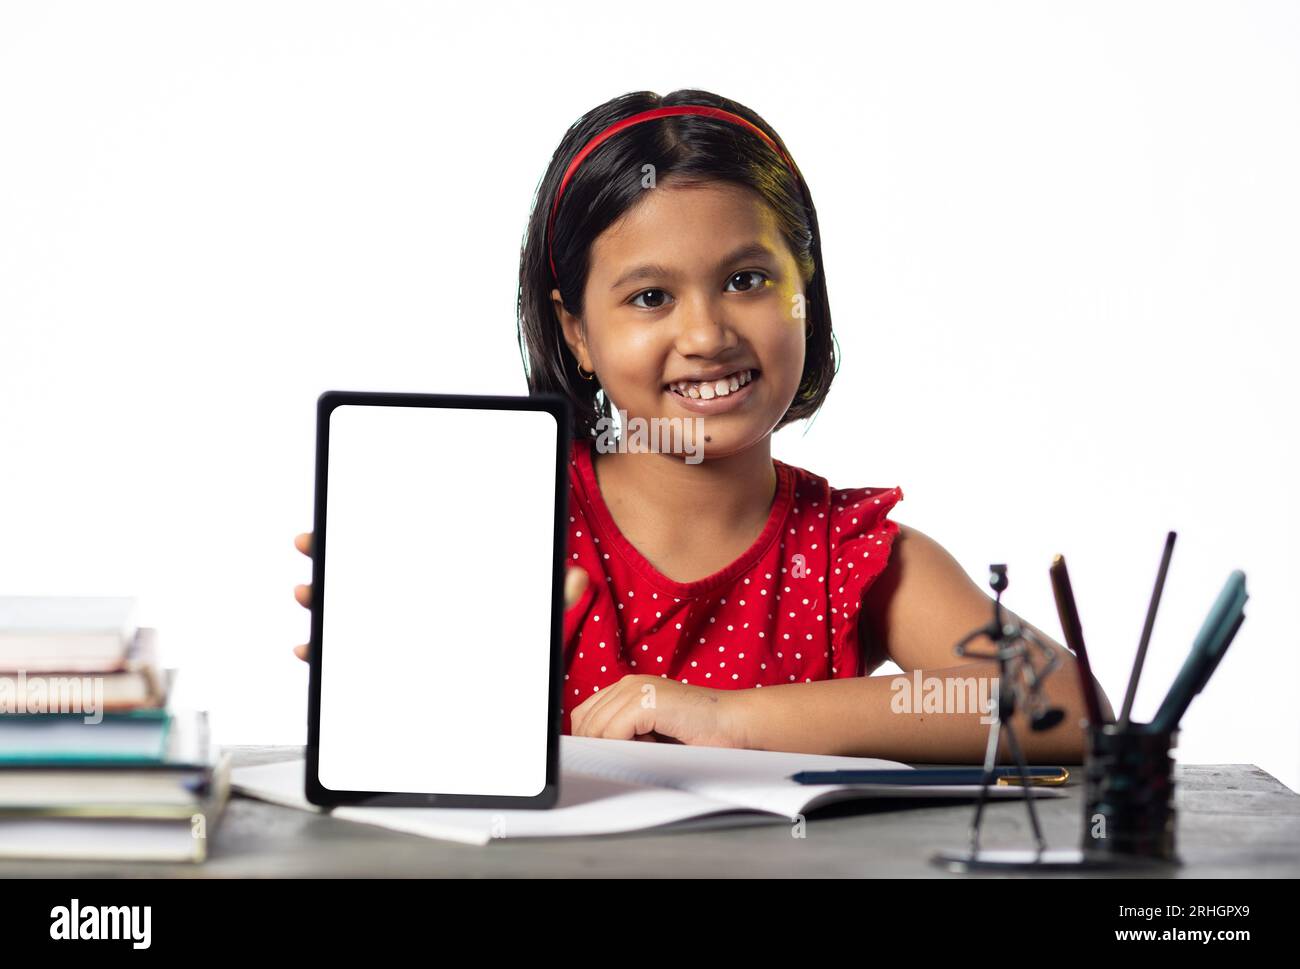 Ein hübsches indisches Mädchen, das studiert und auf dem Tisch auf weißem Hintergrund einen leeren Bildschirm mit Tablet zeigt Stockfoto